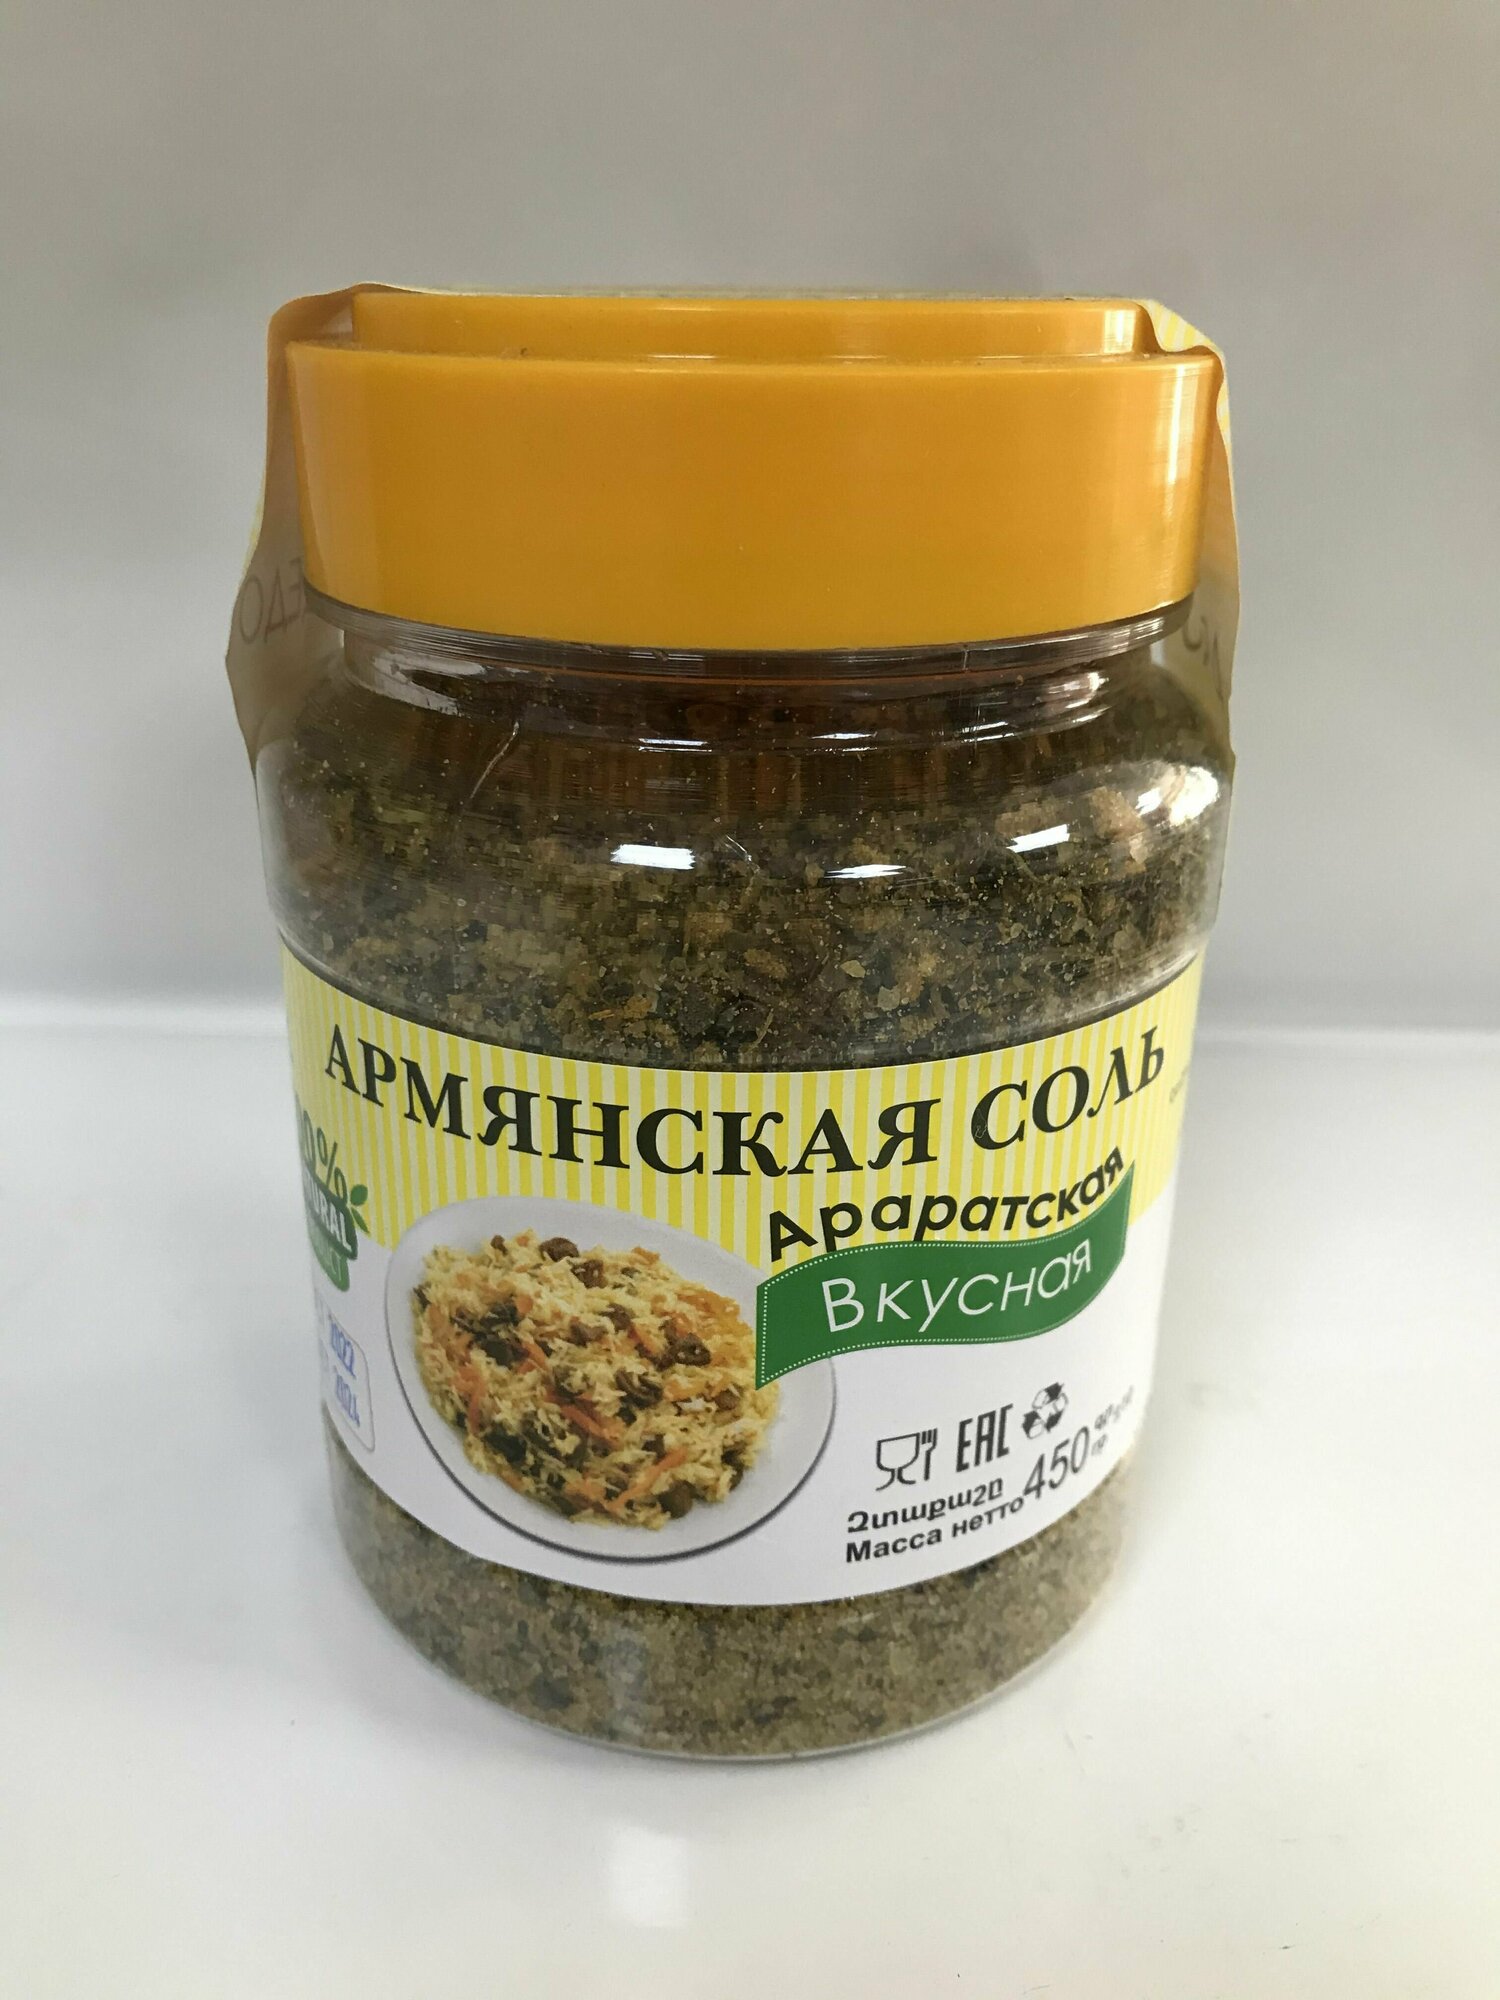 Приправа для блюд Армянская соль Араратская Вкусная 450 гр.